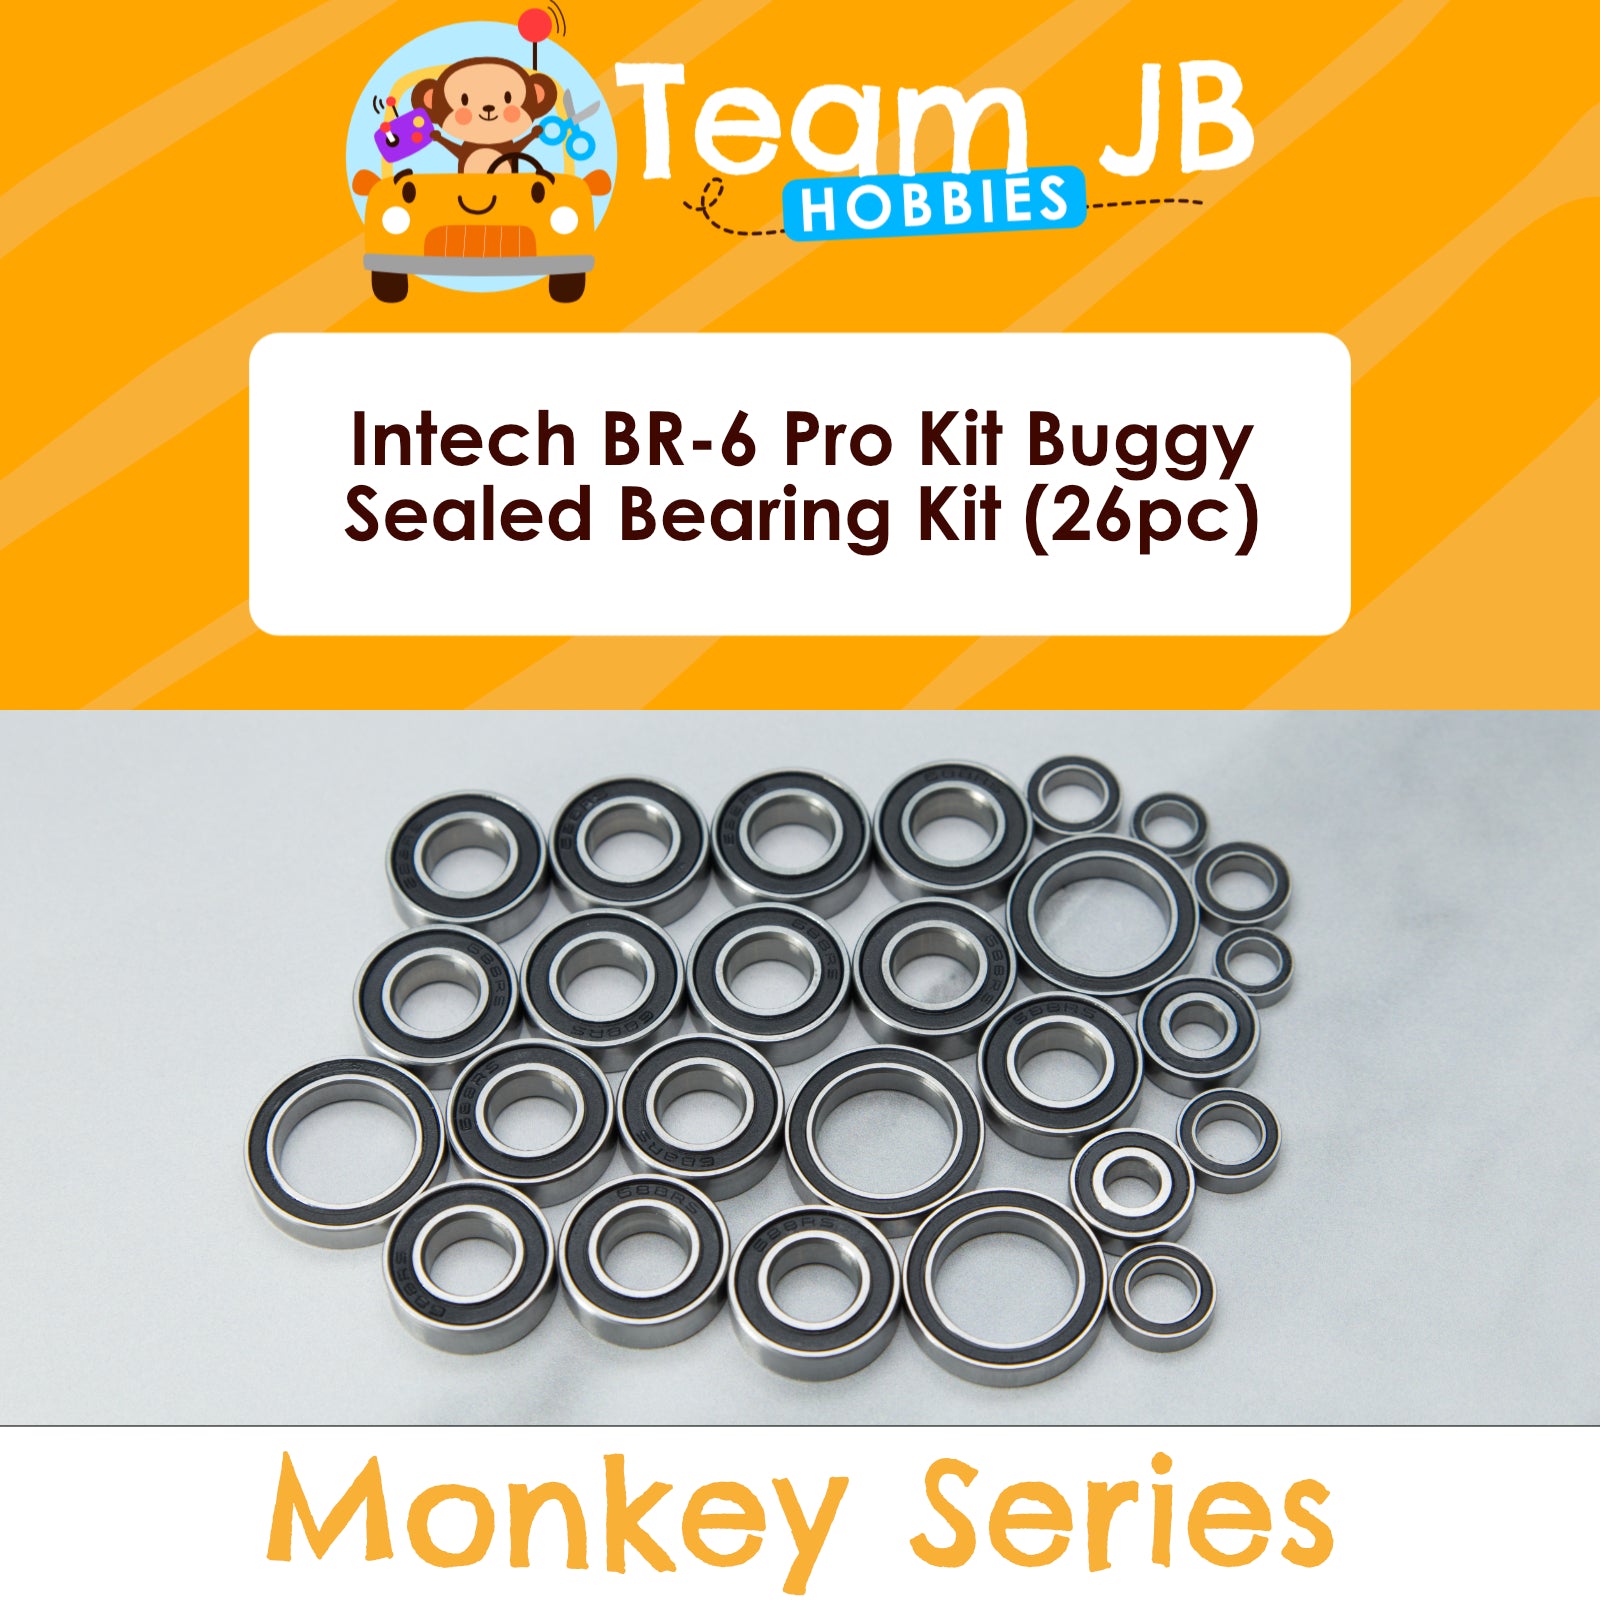 Intech BR-6 Pro Kit Buggy - Sealed Bearing Kit